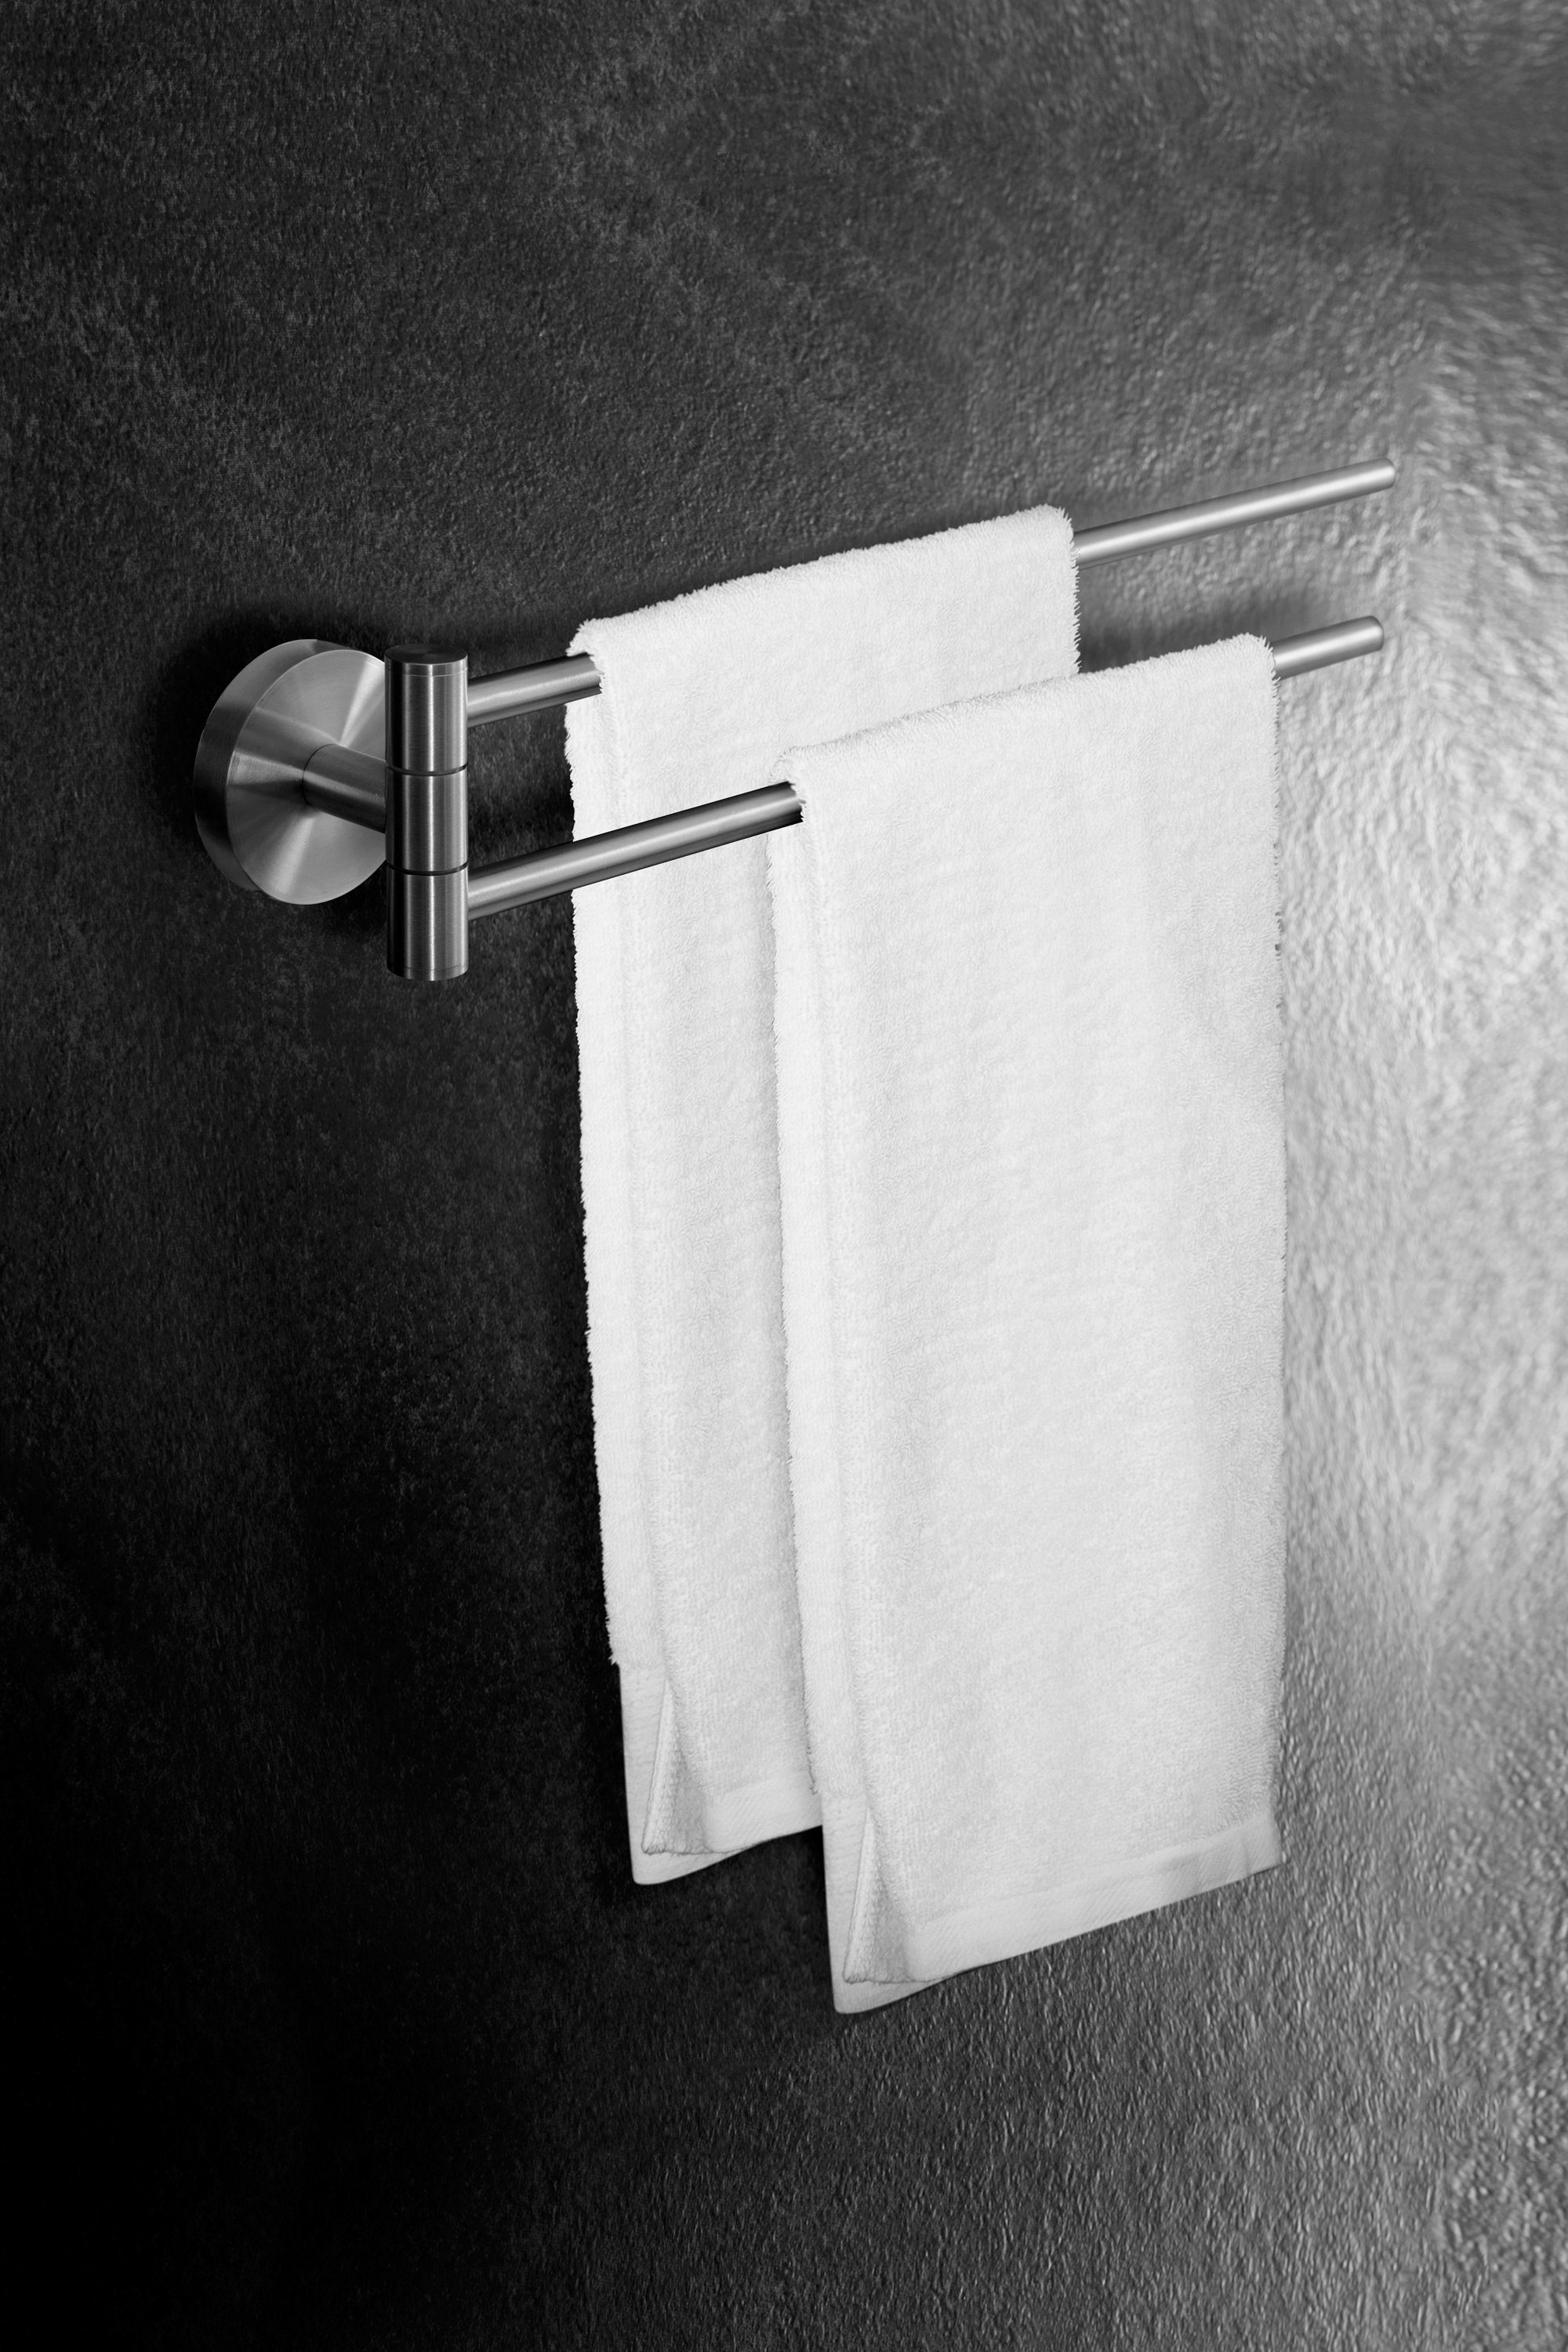 Ambrosya Handtuchhalter Handtuchhalter WC, aus Bad Handtuch Montage - Halter Edelstahl leichte Badetuchhalter